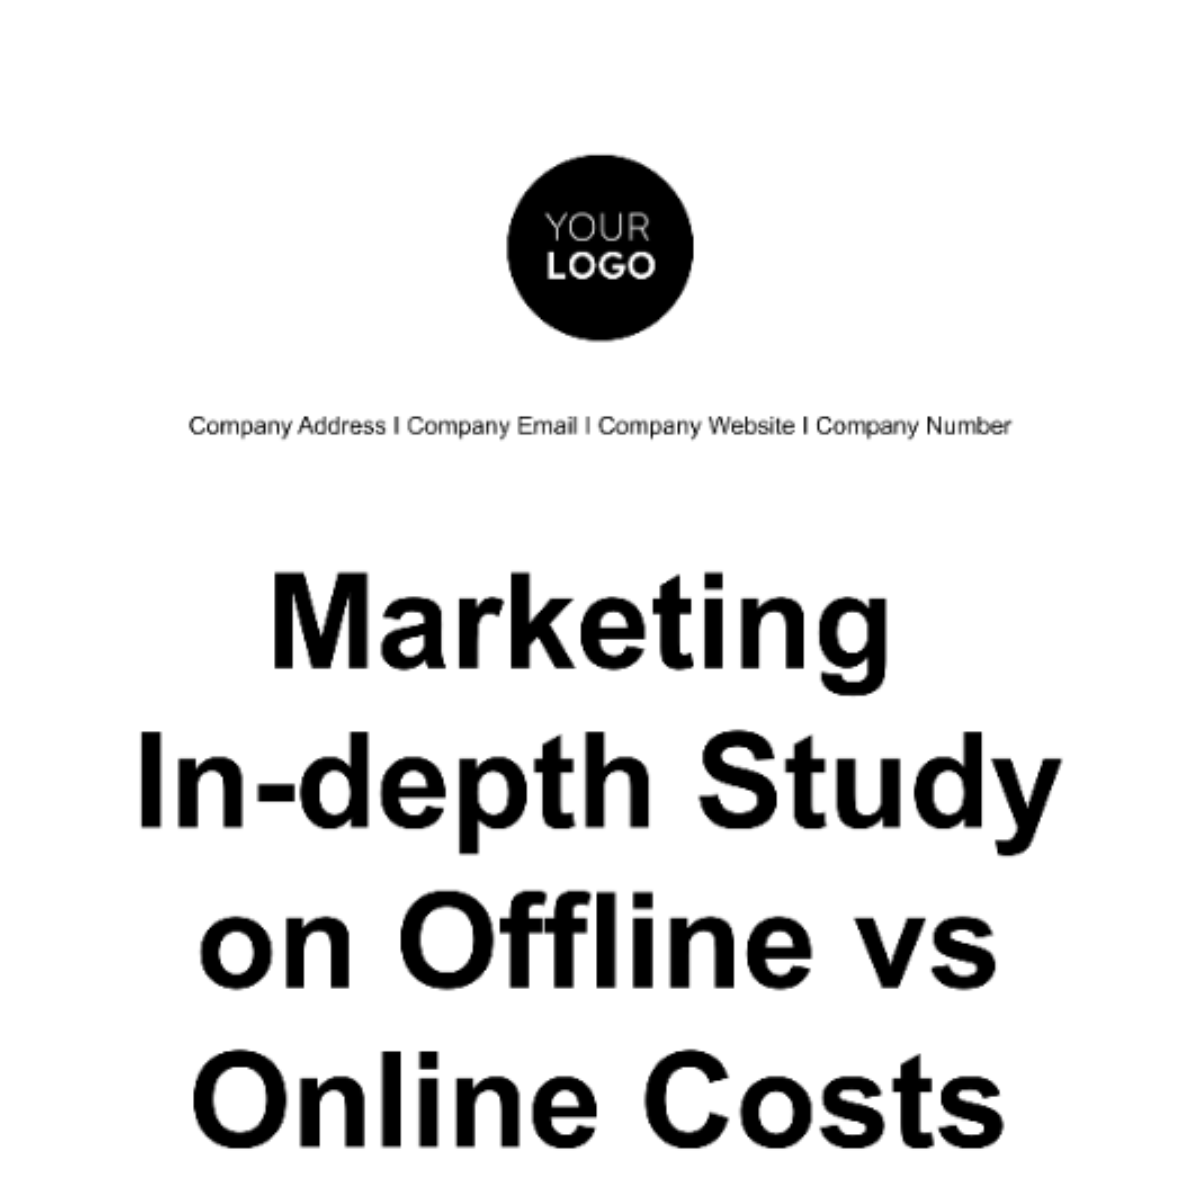 Marketing In-depth Study on Offline vs Online Costs Template